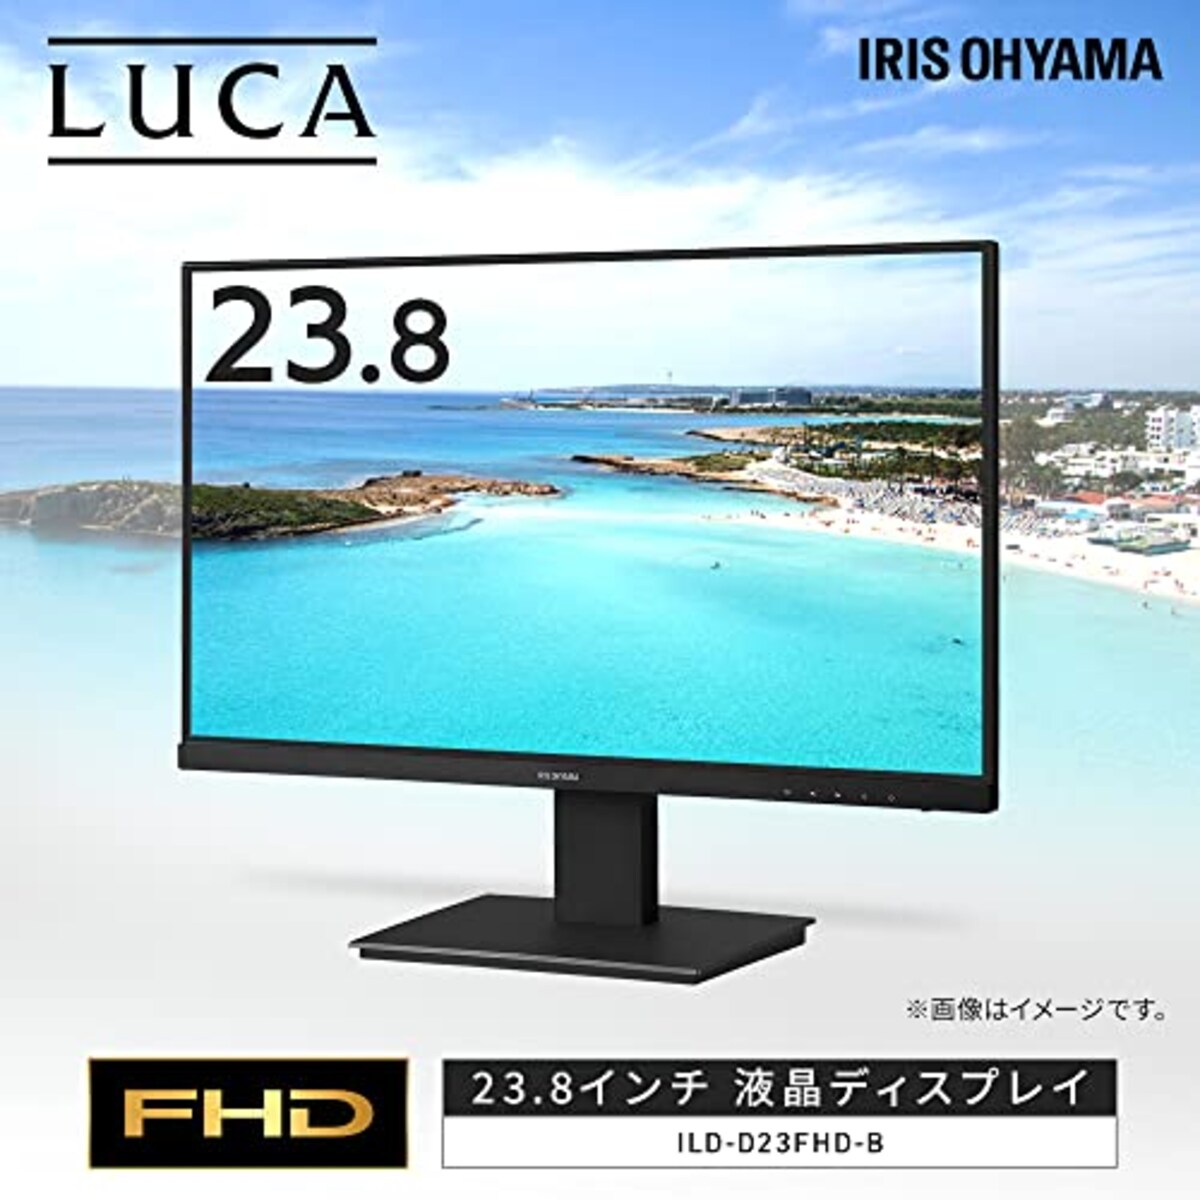  アイリスオーヤマ モニター 24インチ VAパネル ディスプレイ HDMIx1 VGAx1 FHD 1920x1080 75Hz 7ms 非光沢 フレームレス フリッカーレス ILD-D23FHD-B画像2 